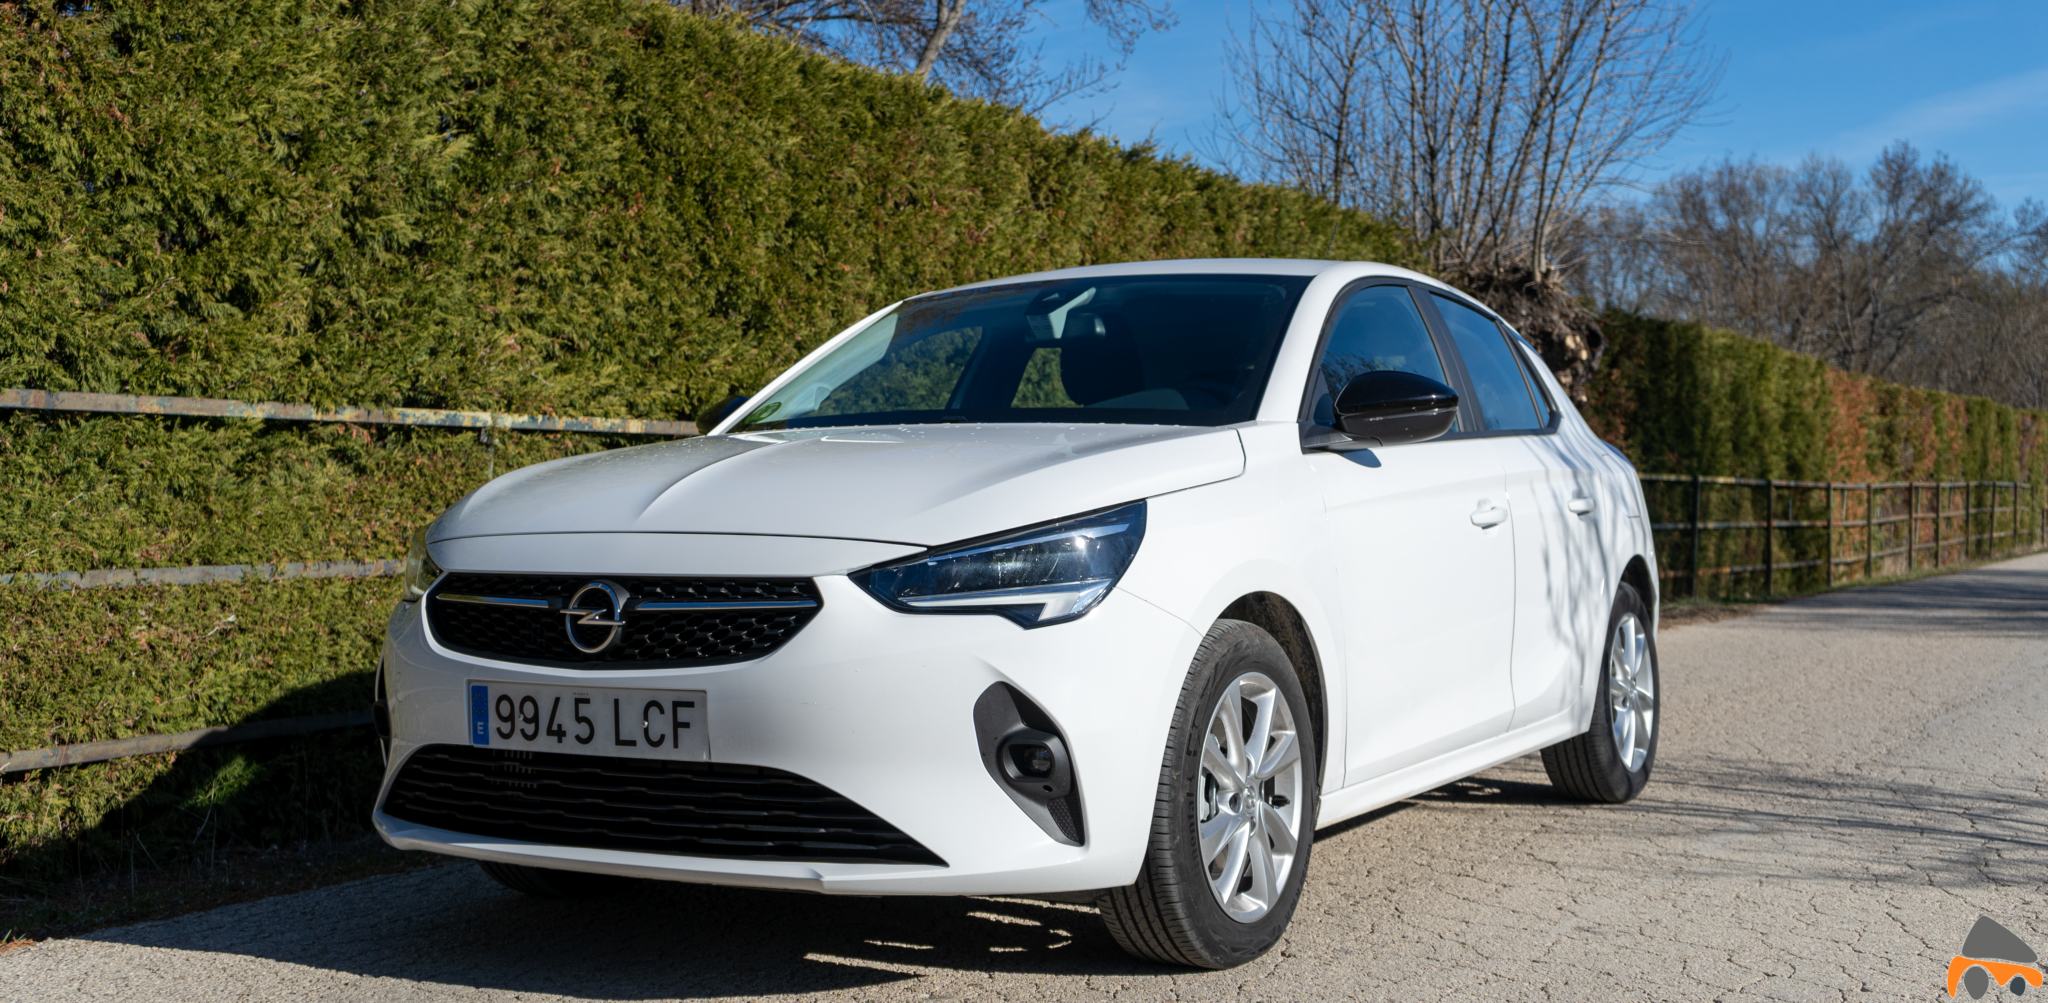 Frontal lateral izquierdo Opel Corsa Edition 2020 - Opel Corsa 2020: Un utilitario para tenerlo muy en cuenta